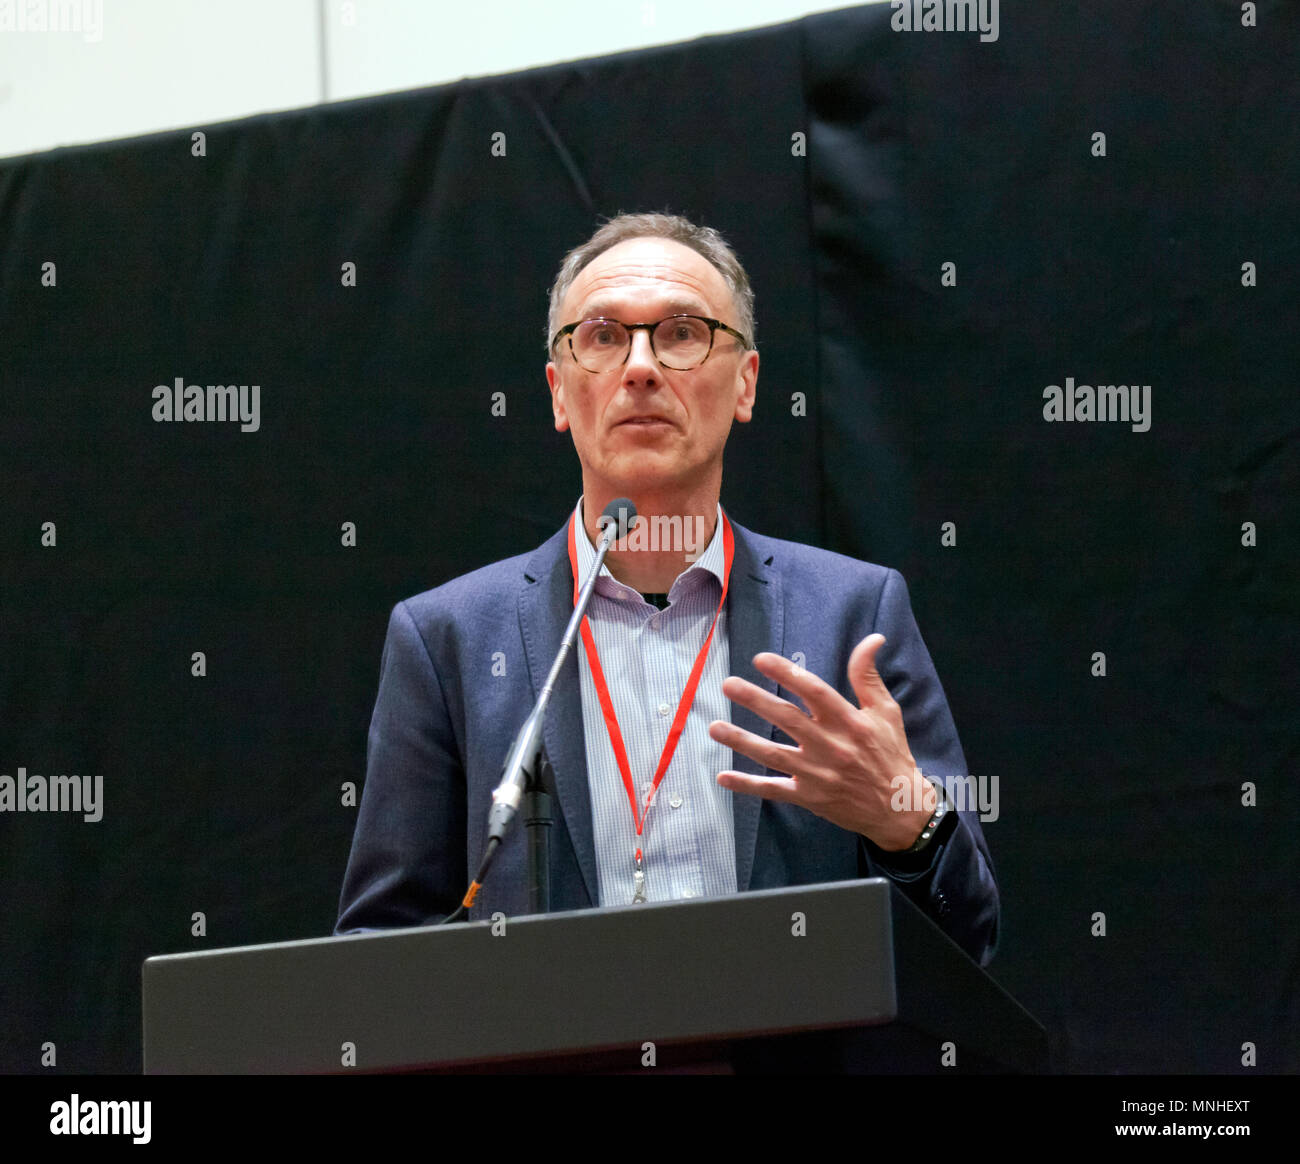 Le Professeur Dr. Andreas Herrmann, donnant un cours sur la conduite autonome, à la salle de conférence, au cours de la journée de presse du salon automobile de Londres 2018. Banque D'Images